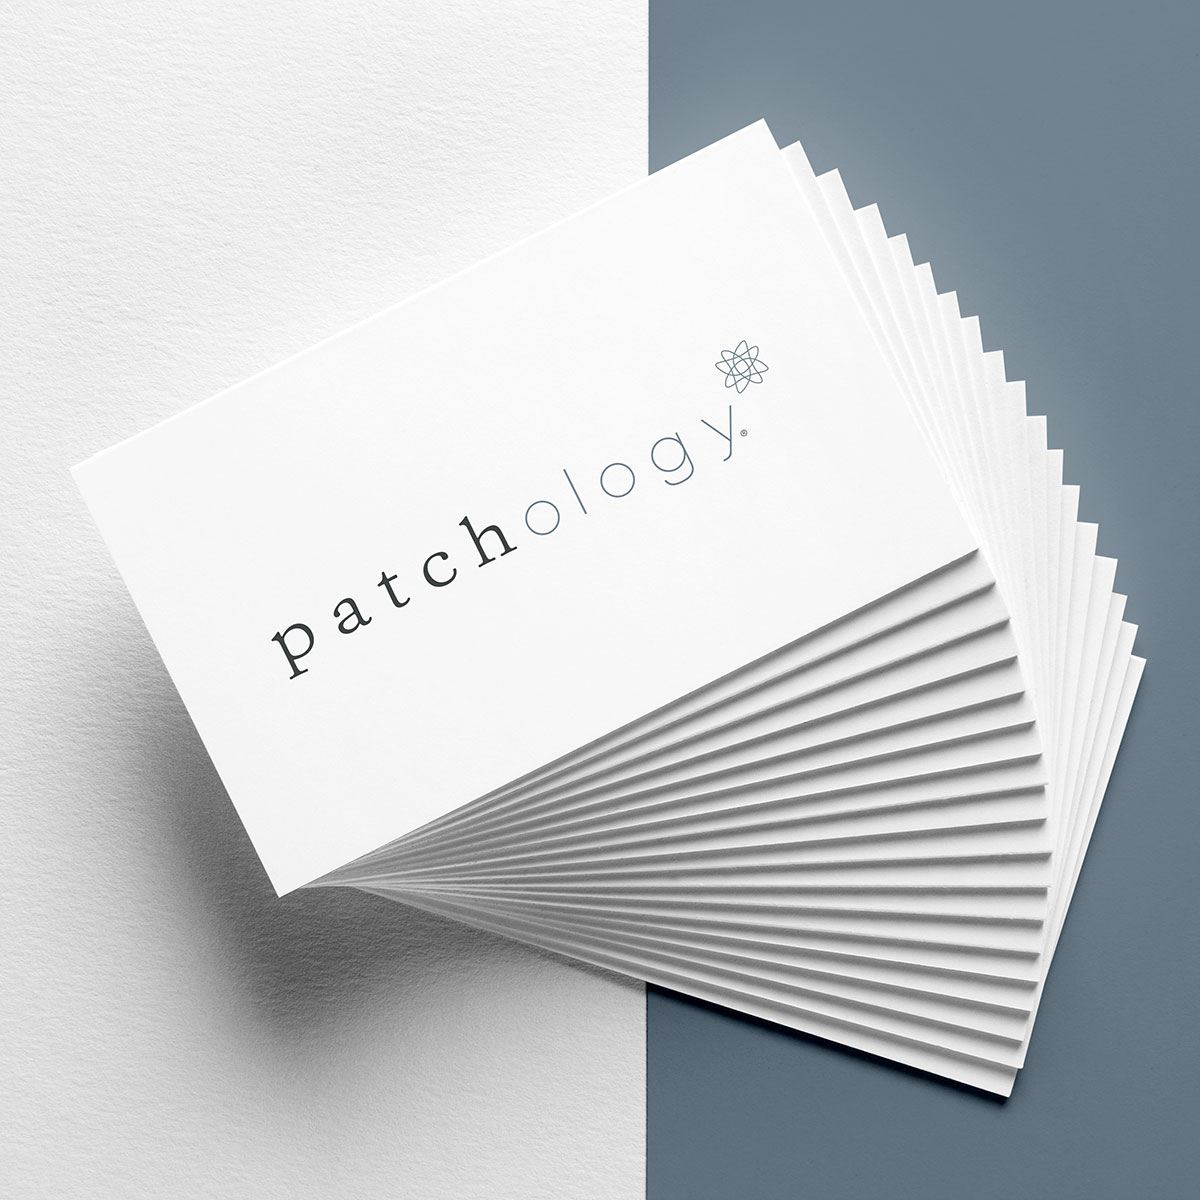 Patchology Brand Identity Logo Design